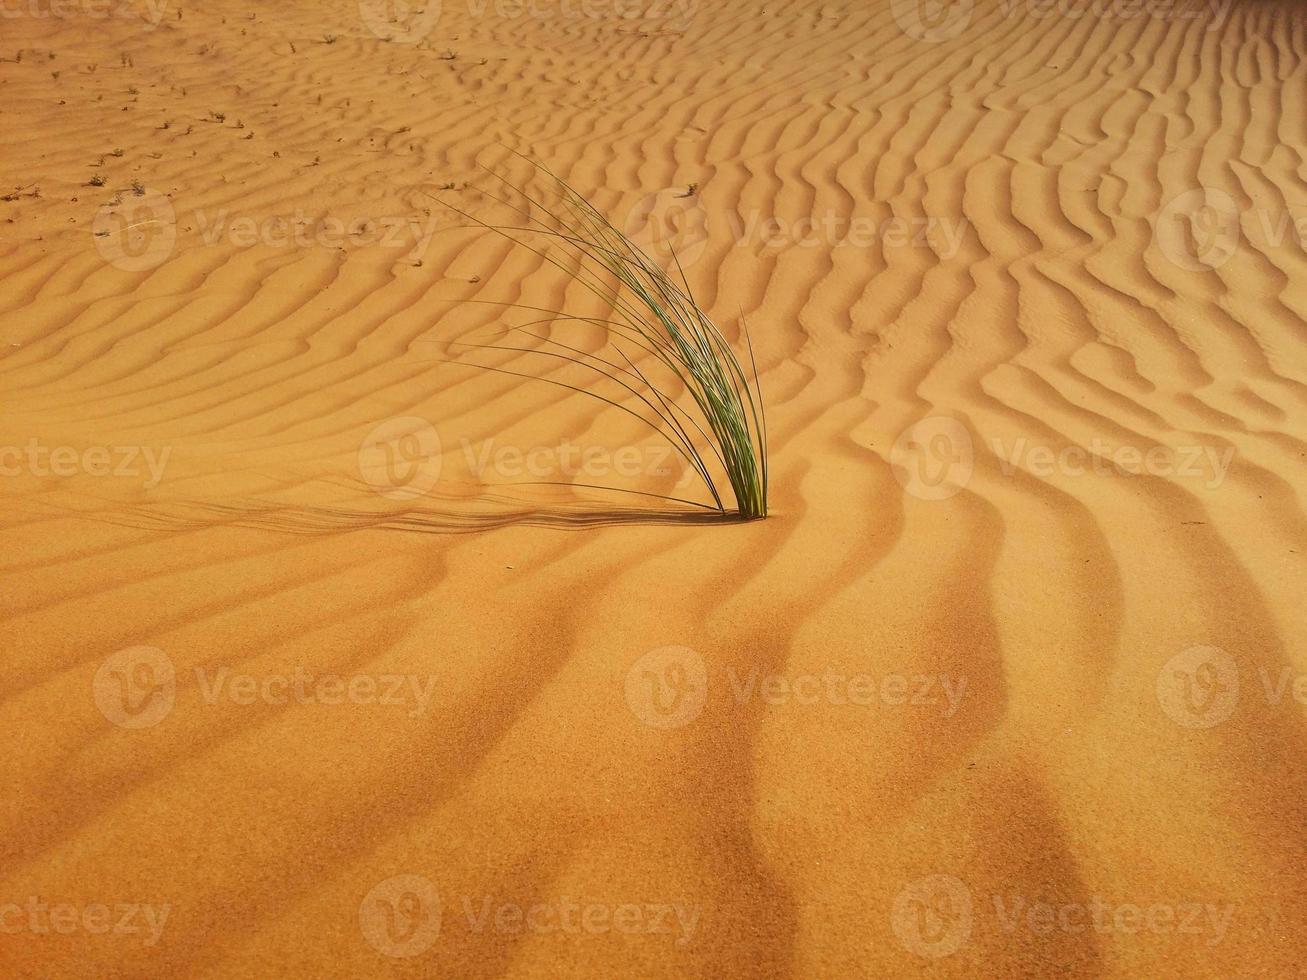 sanddyner i öknen foto